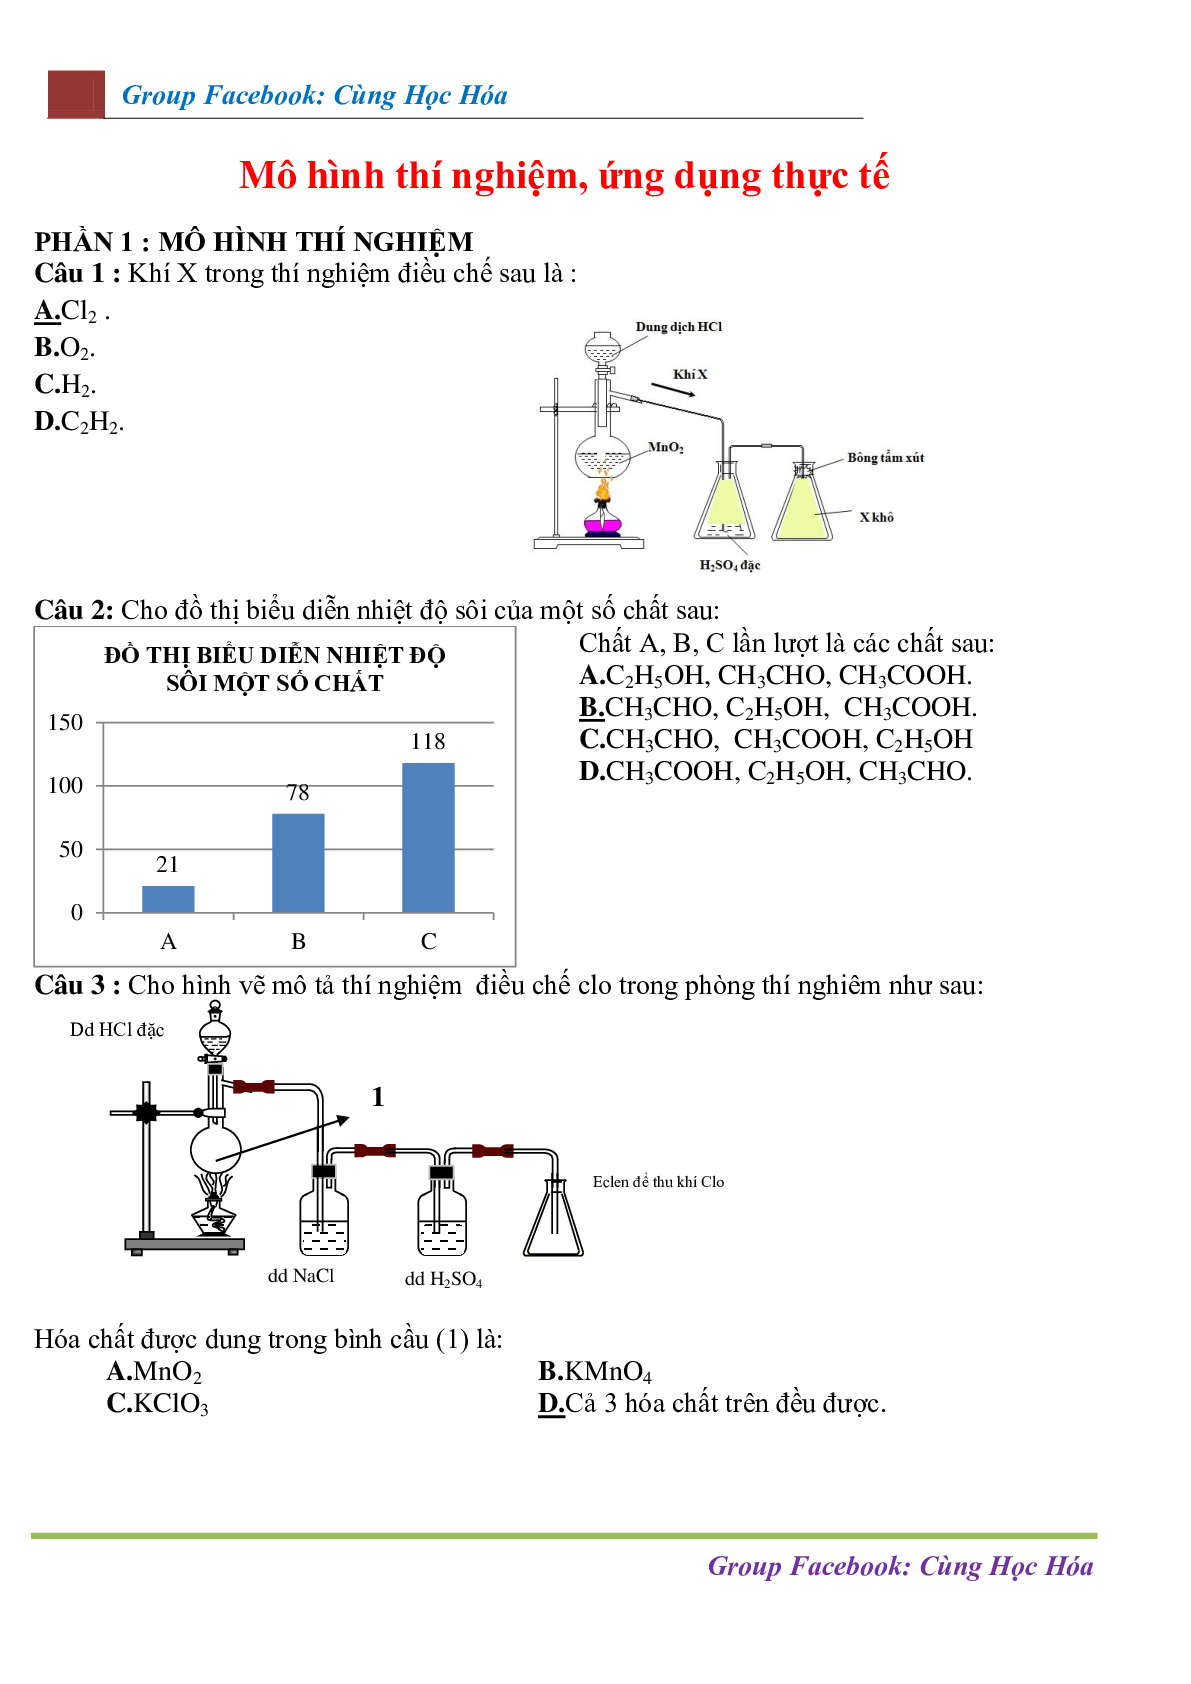 Chuyên đề Mô hình thí nghiệm - ứng dụng thực tế môn Hóa học ôn thi THPTQG (trang 1)